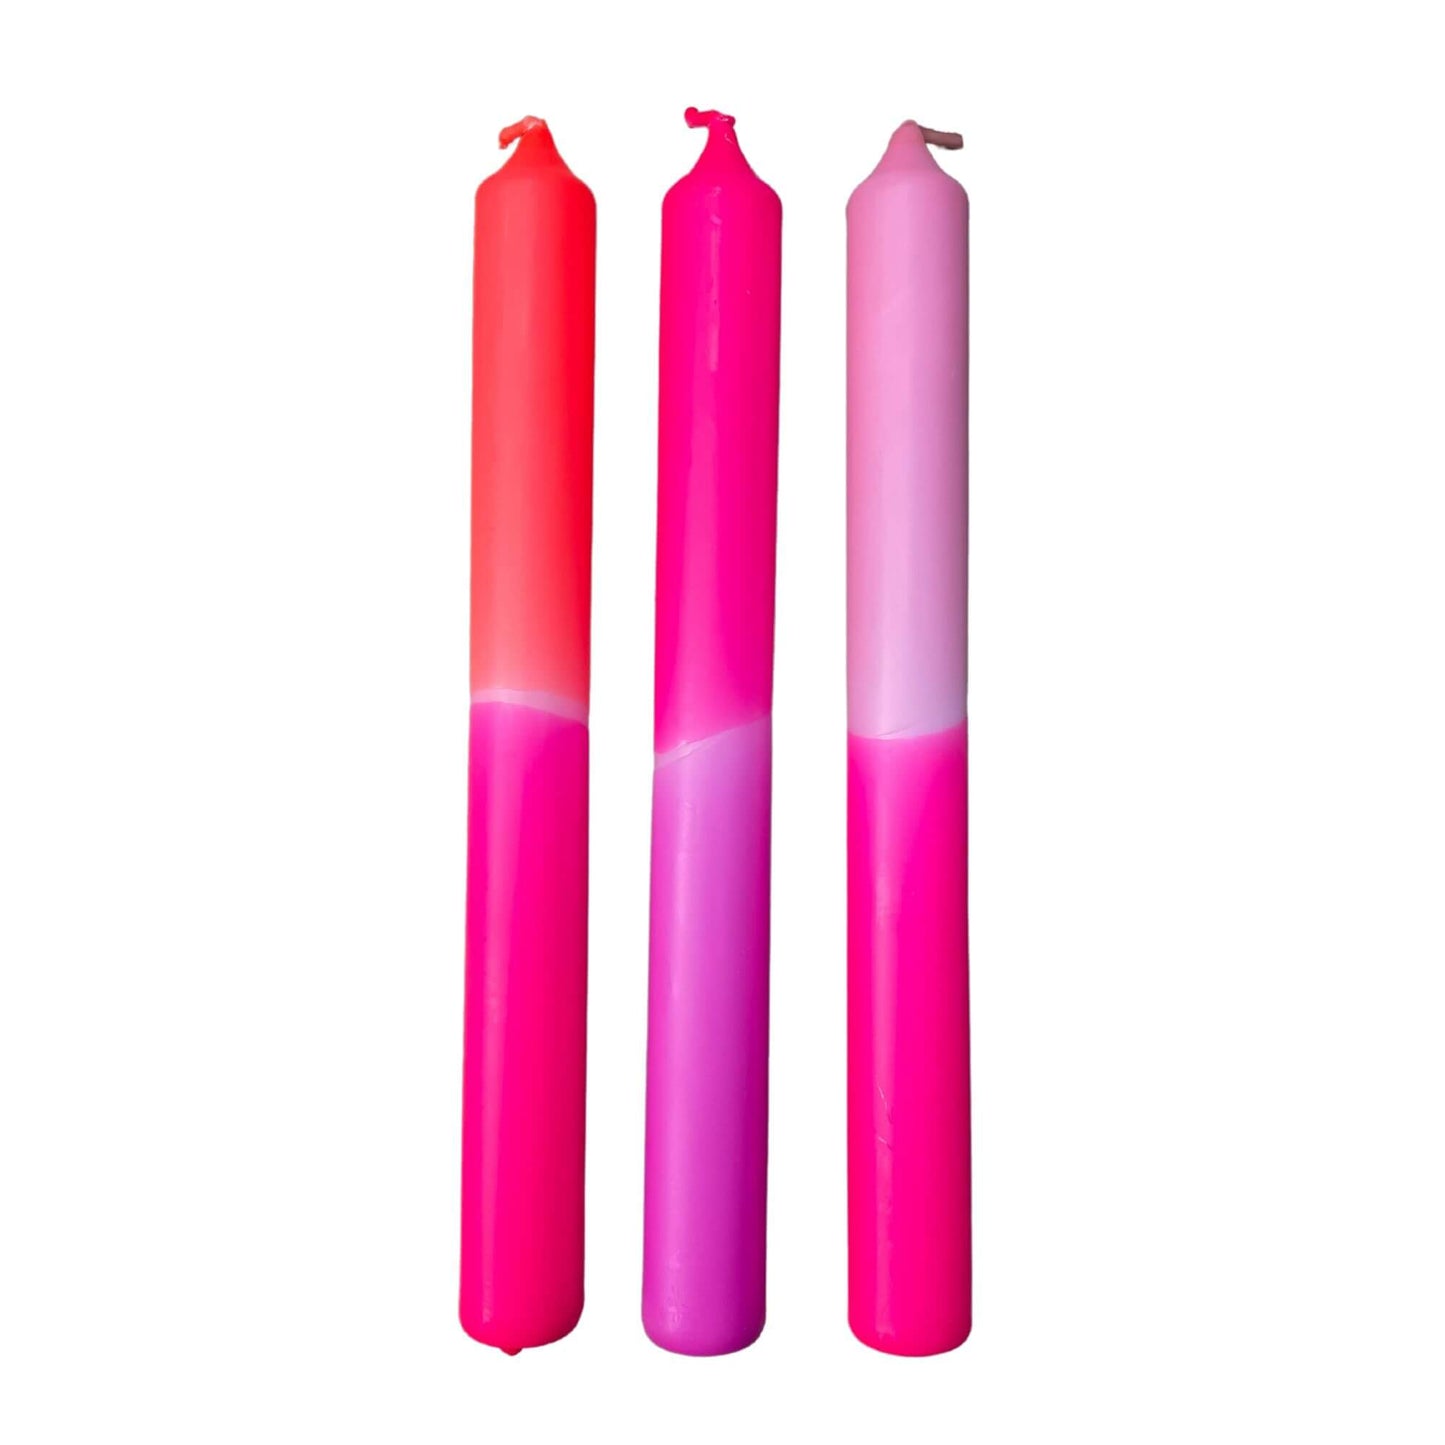 Dip Dye Neon Adorable Sweetheart kaarsen per 3 verpakt